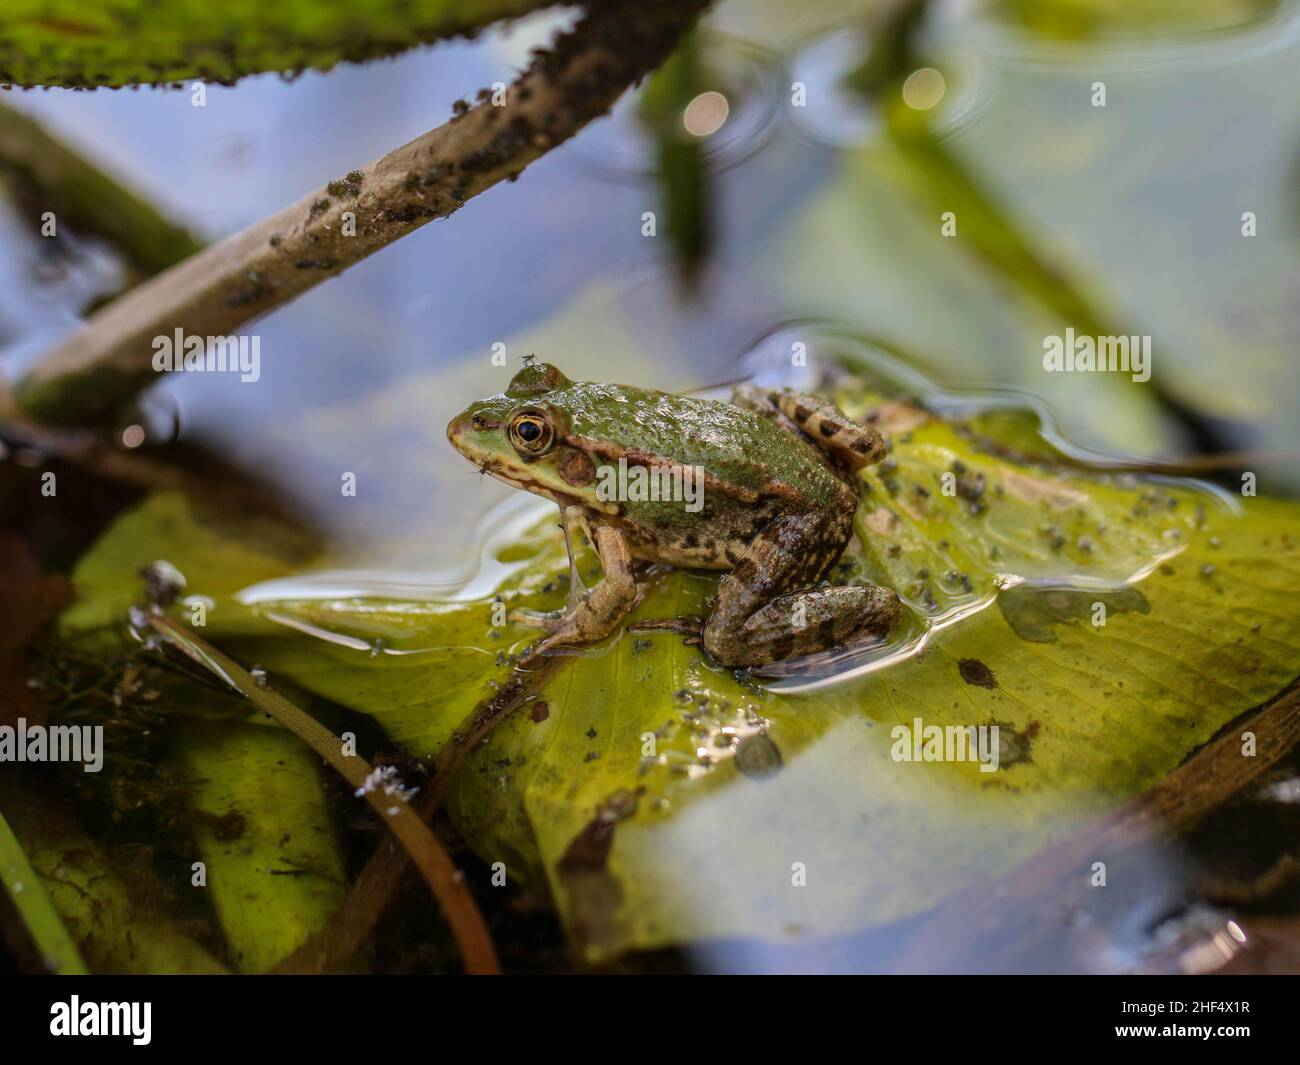 La rana commestibile (Pelophylax kl. Esculentus) nello stagno con foglie di giglio d'acqua giallo Foto Stock